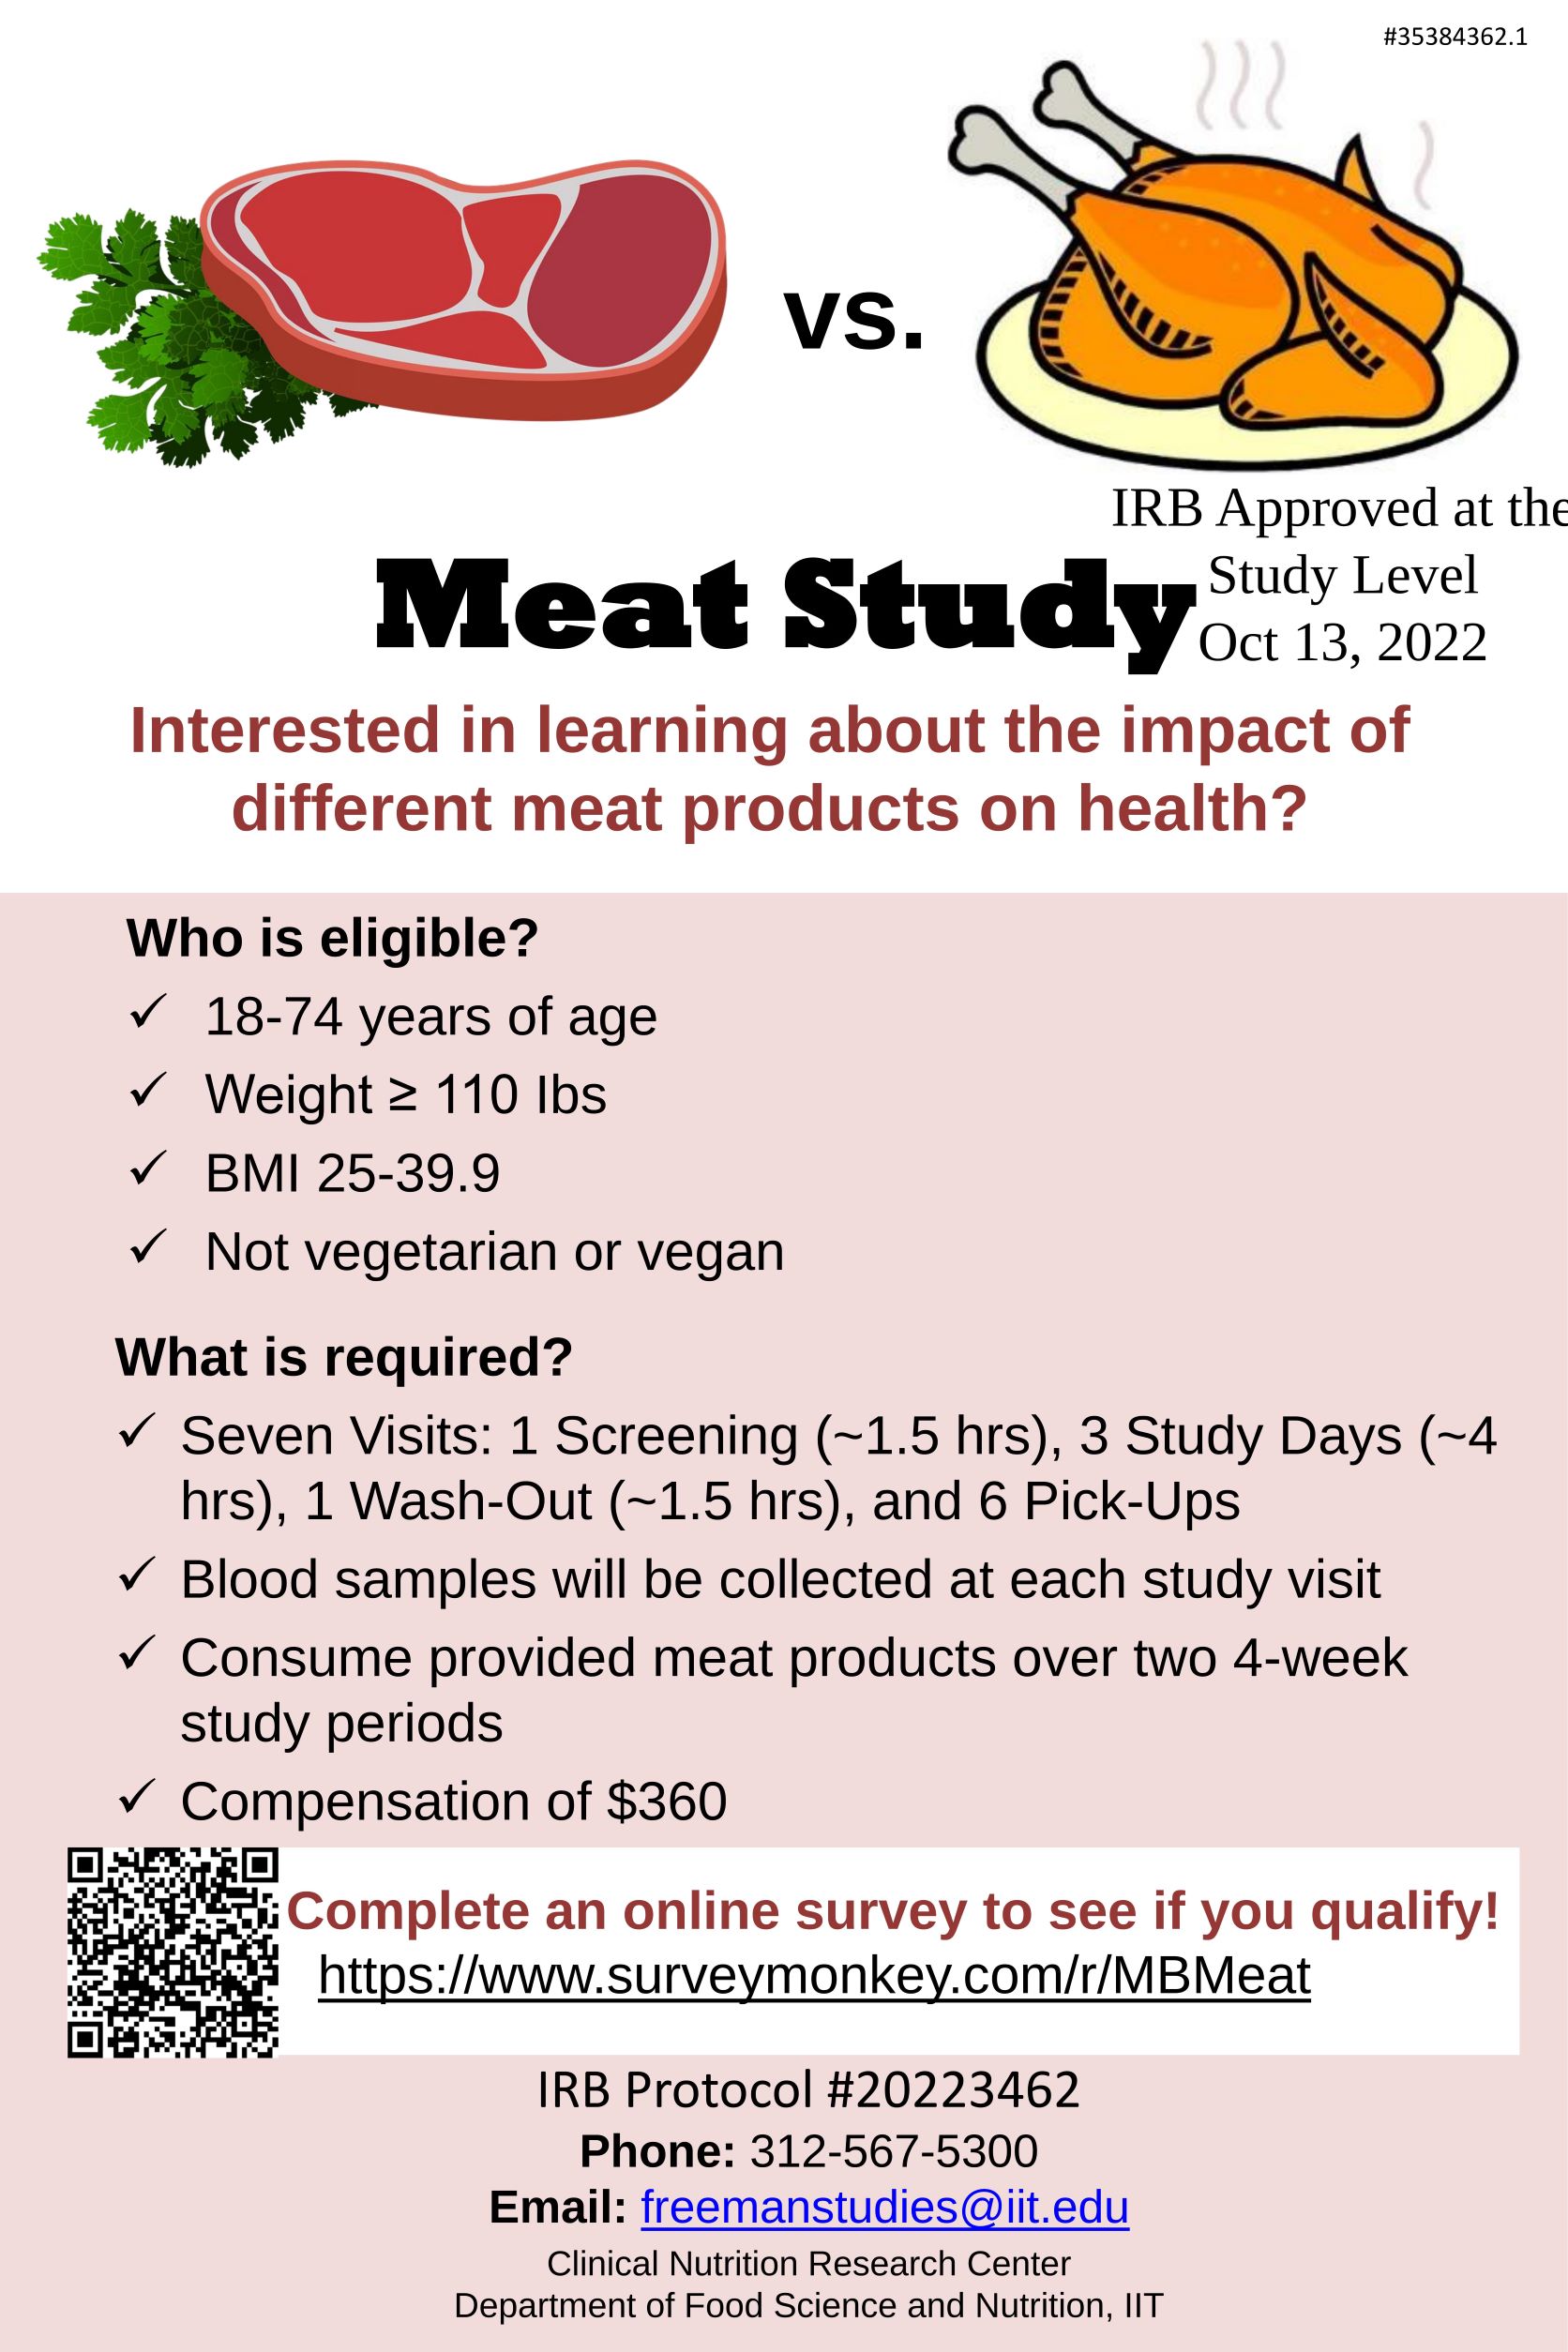 Meat study participants sought